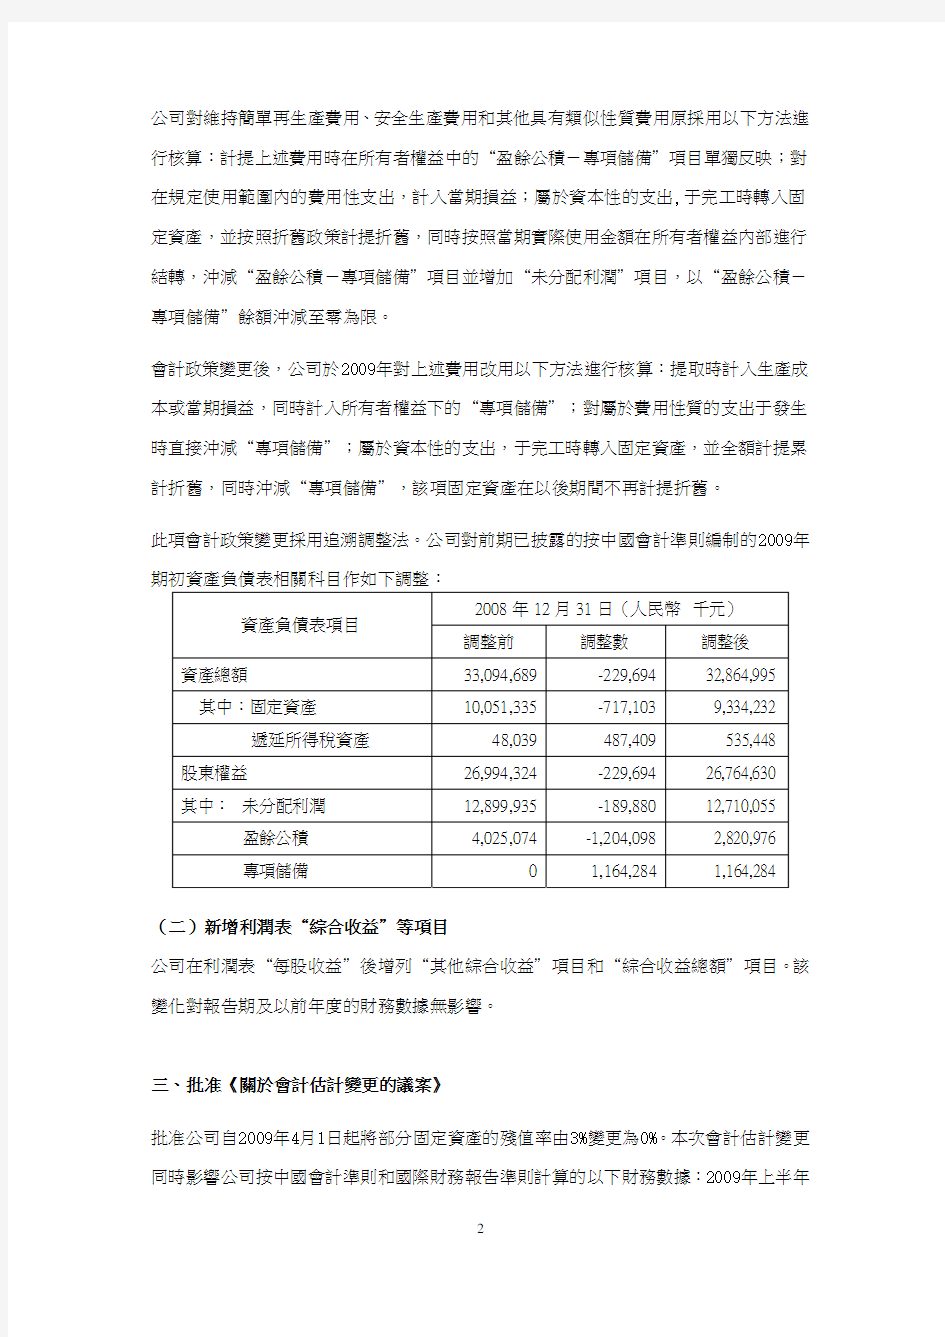 兖州煤业股份有限公司 YANZHOU COAL MINING COMPANY LIMITED